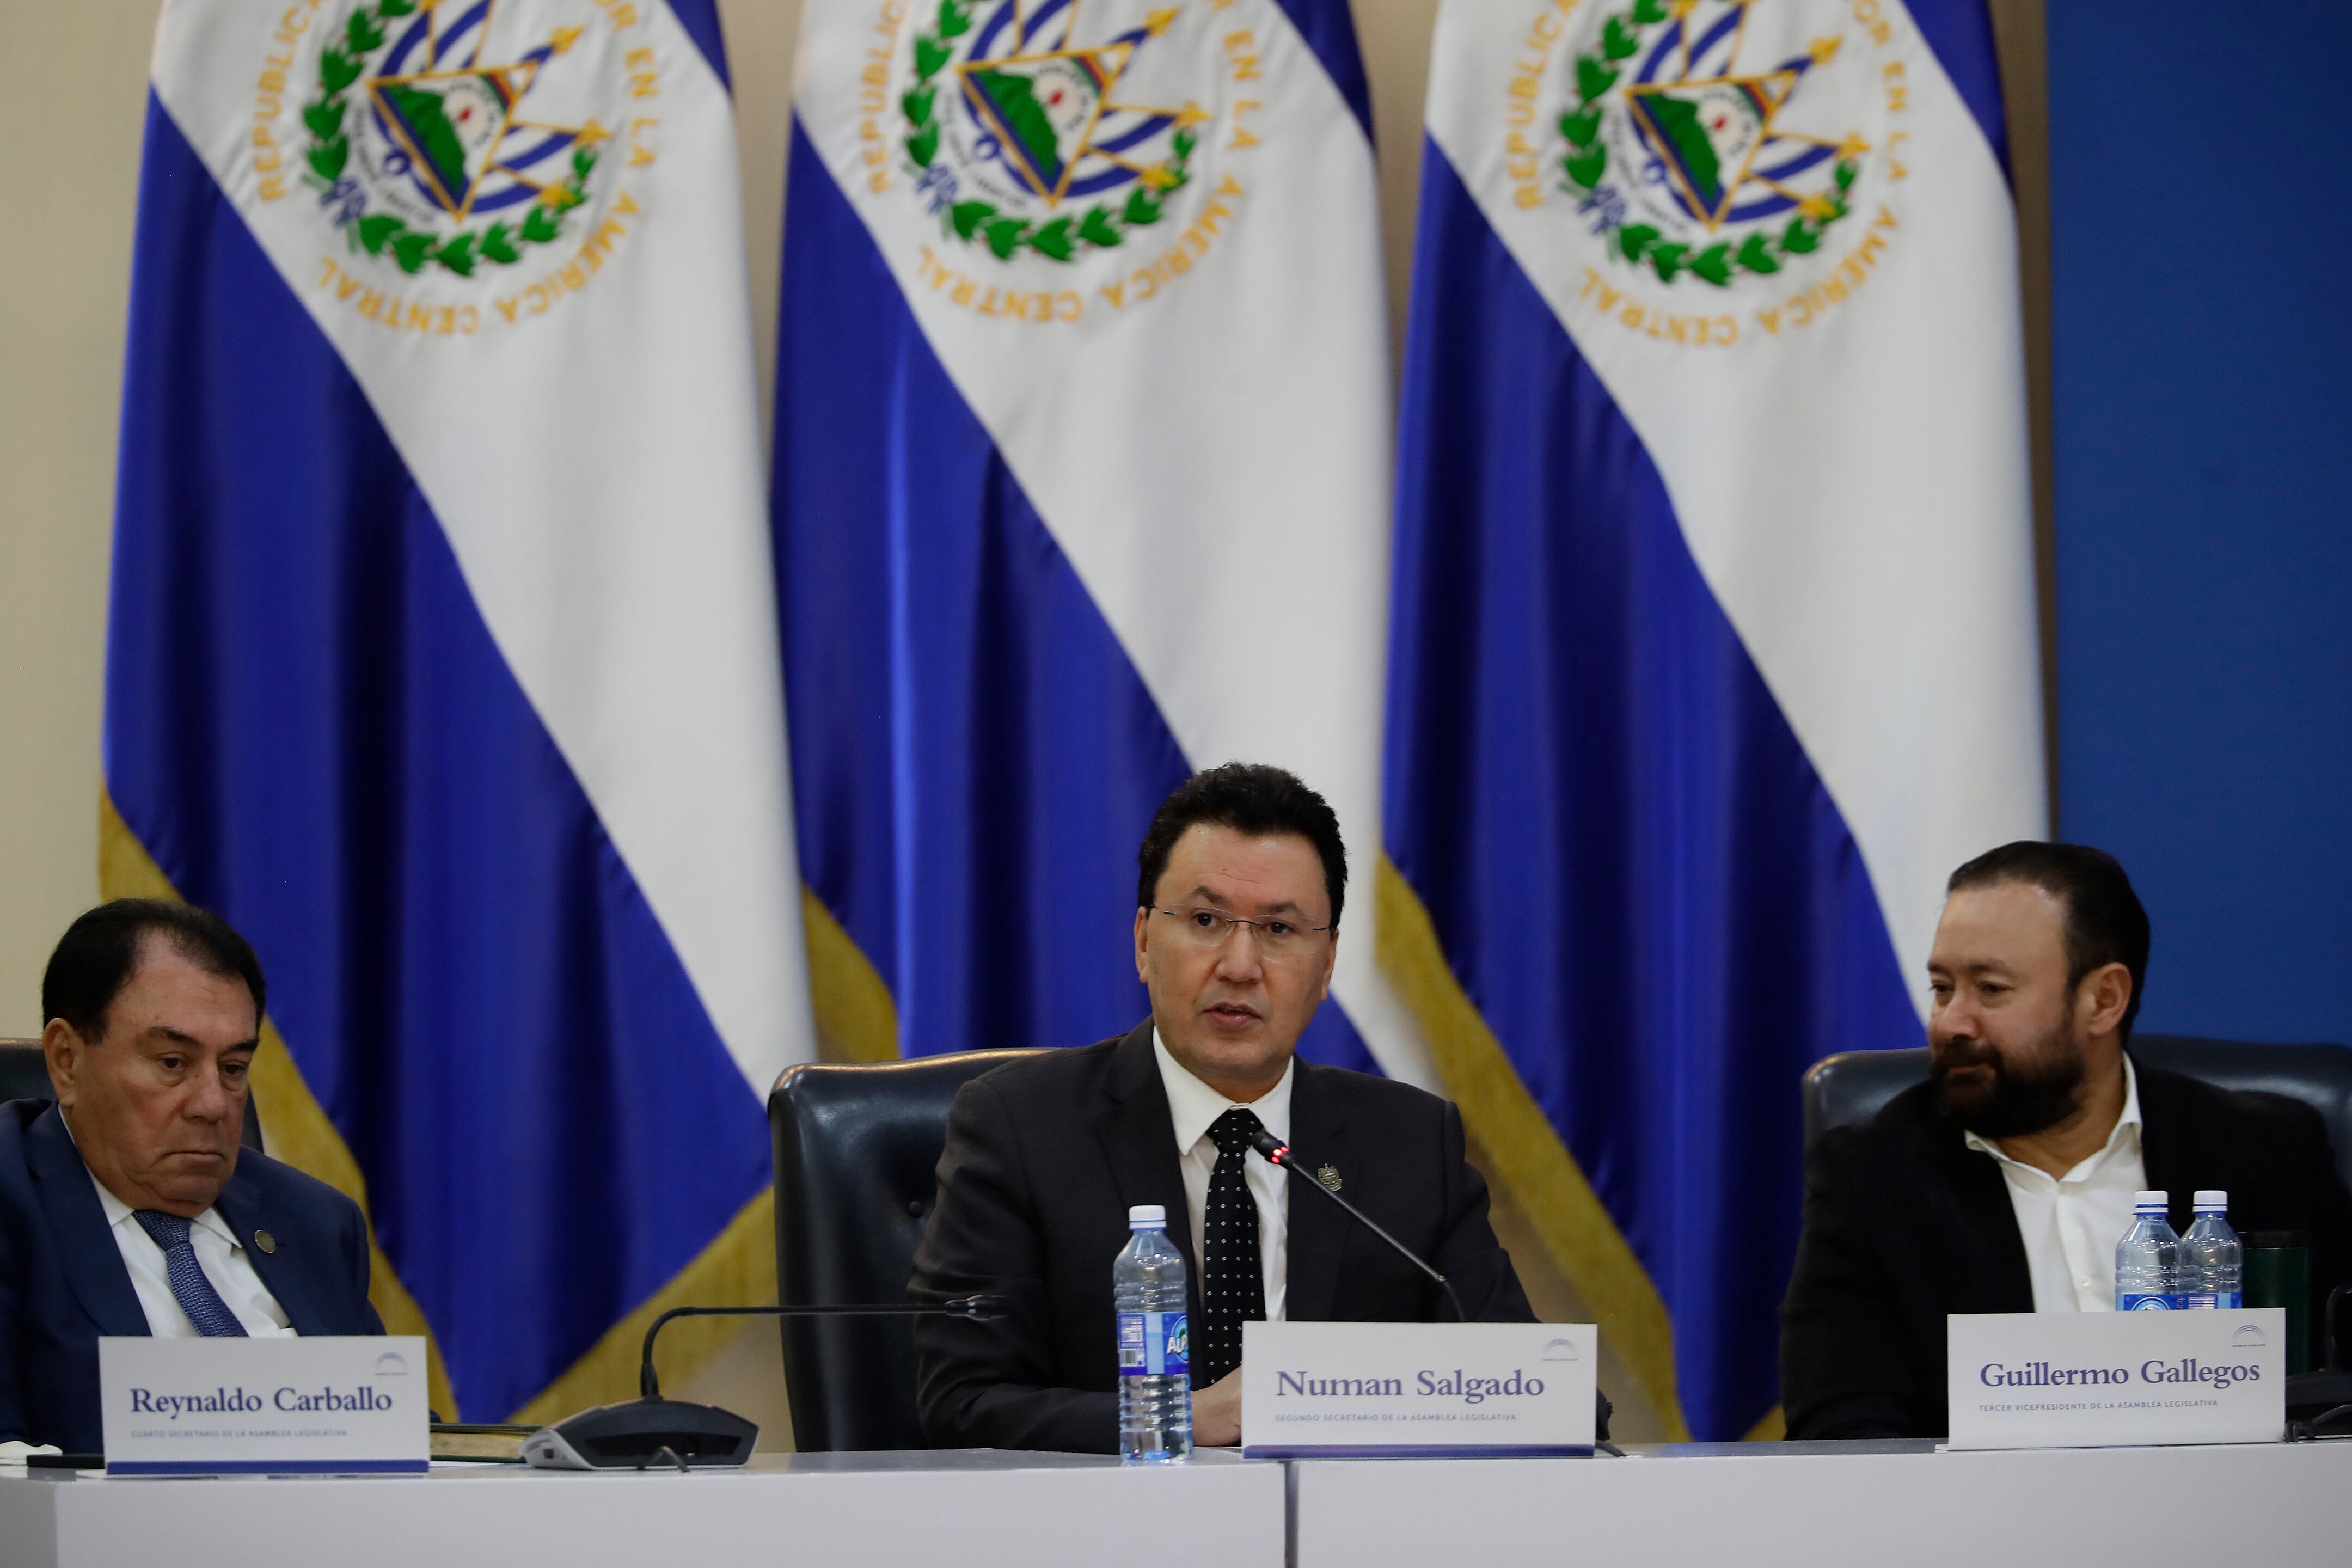 Los diputados Reinaldo Carballo, Núman Salgado y Guillermo Gallegos en la sesión de la Asamblea Legislativa de este lunes.